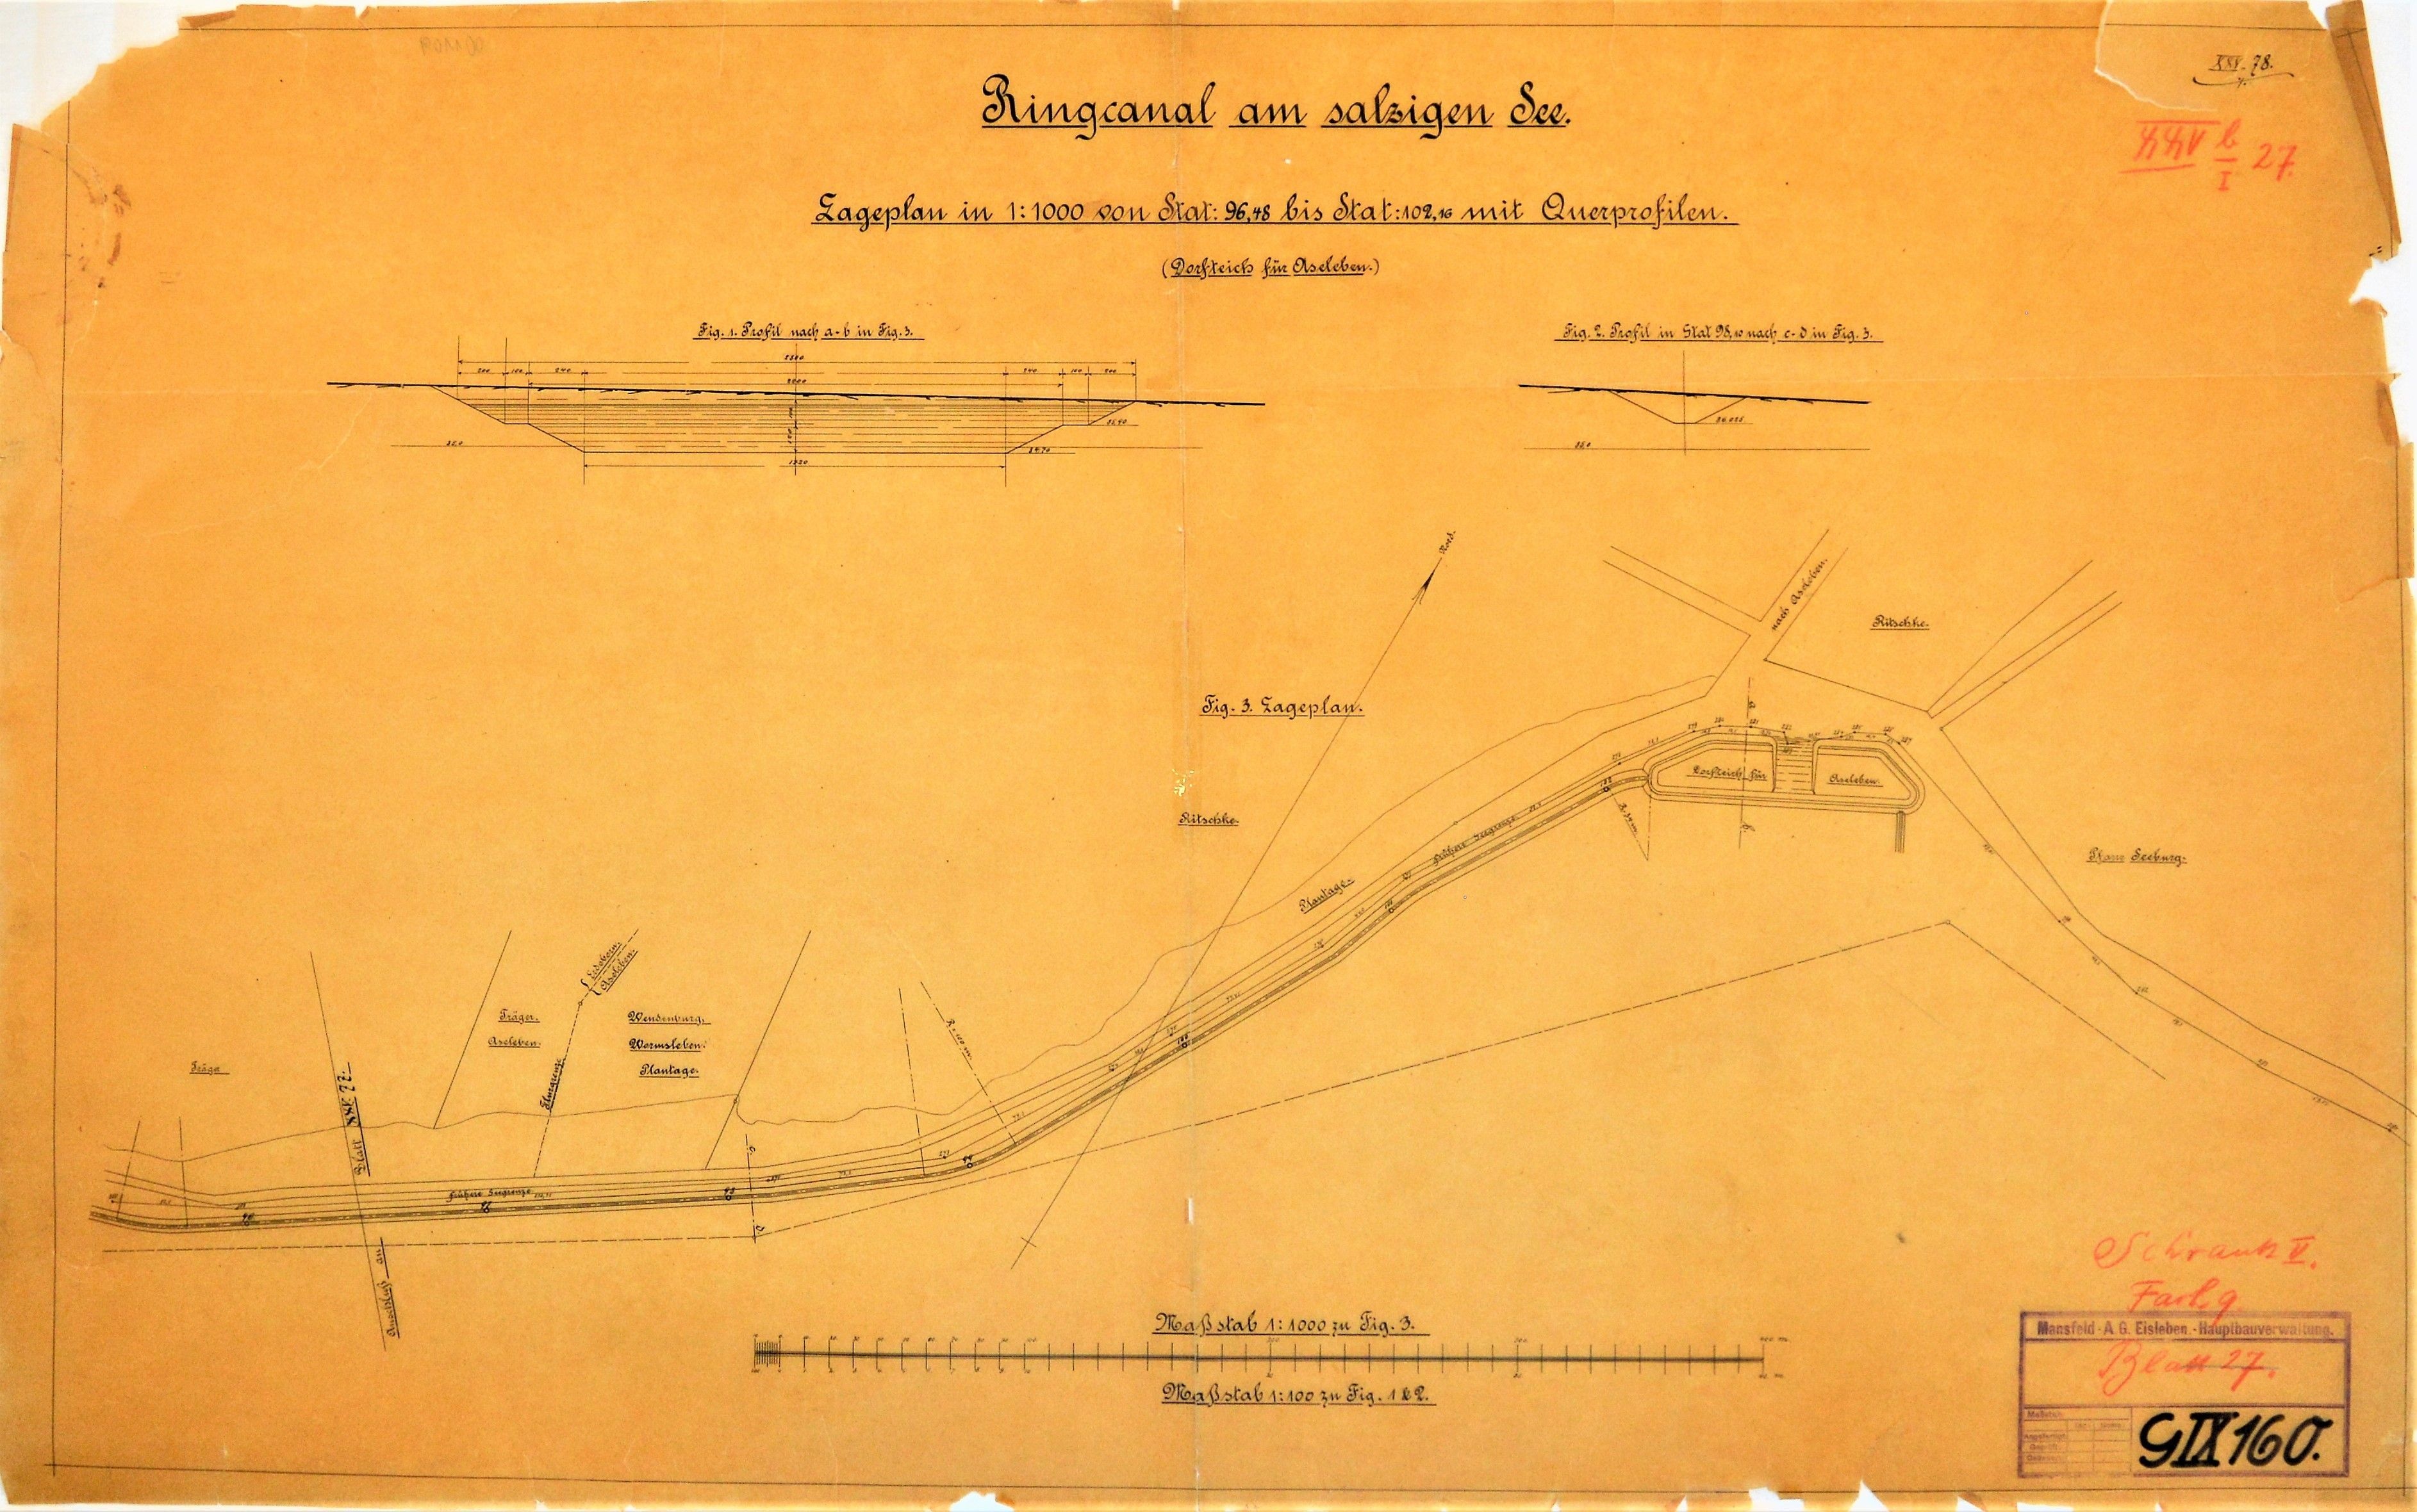 Ringcanal am salzigen See. Lageplan von Stat. 96,48 bis Stat. 102,16 mit Querprofilen. (Dorfteich für Aseleben.) (Mansfeld-Museum im Humboldt-Schloss CC BY-NC-SA)